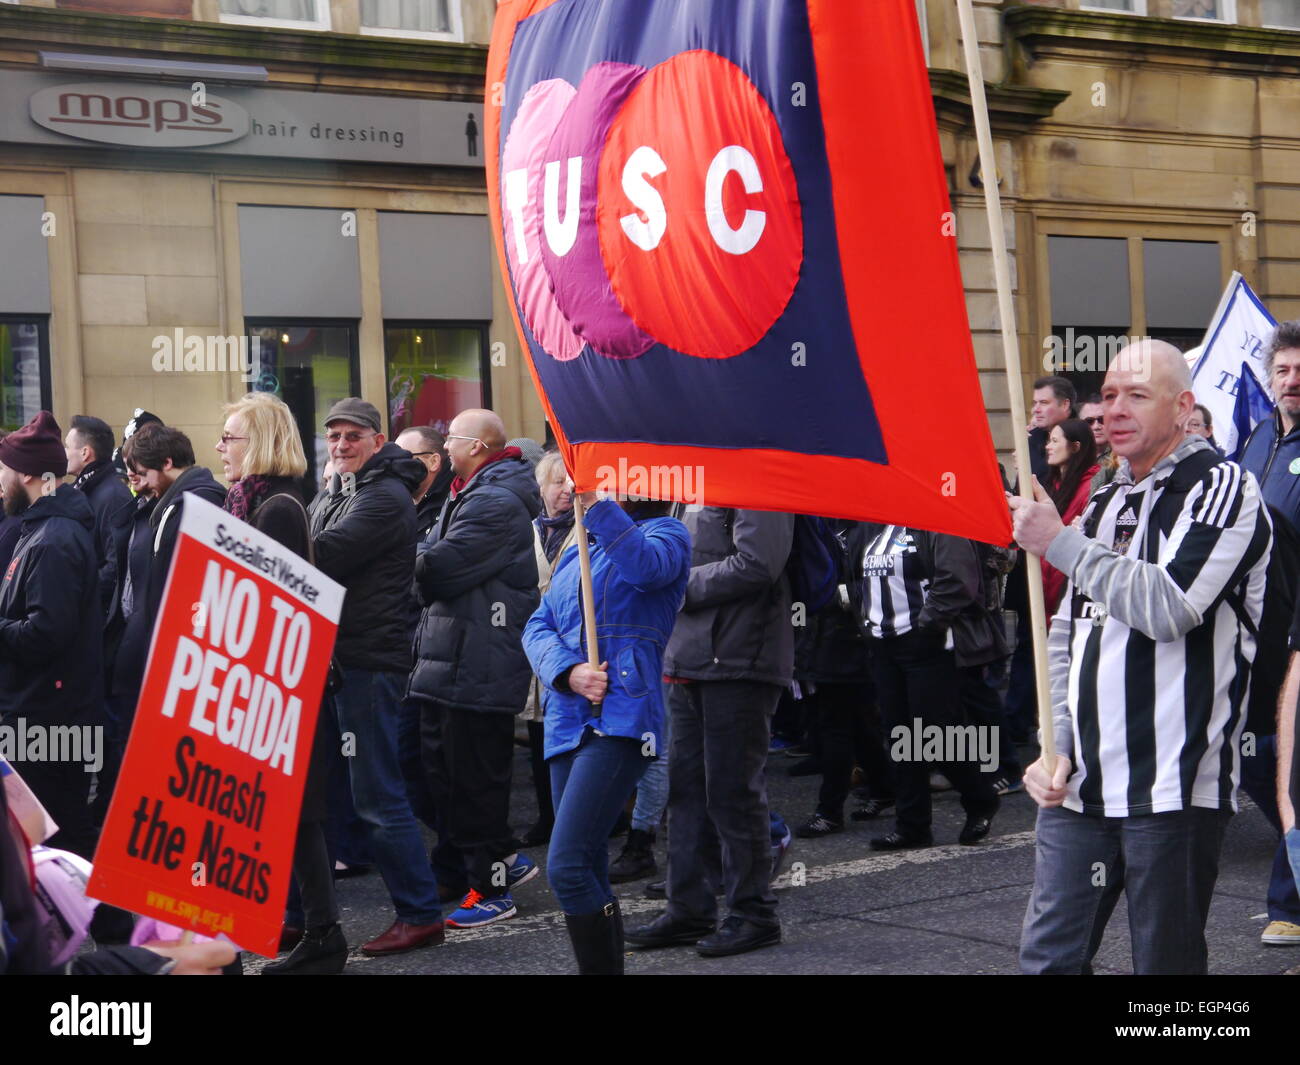 Newcastle upon Tyne, au Royaume-Uni. 28 février 2015. Les manifestants se rassemblent pour protester contre l'unite de newcastle le racisme et l'apparition de l'organisation anti-islamique, pegida, à Newcastle upon Tyne. crédit : victor w. adams / alamy live news Banque D'Images